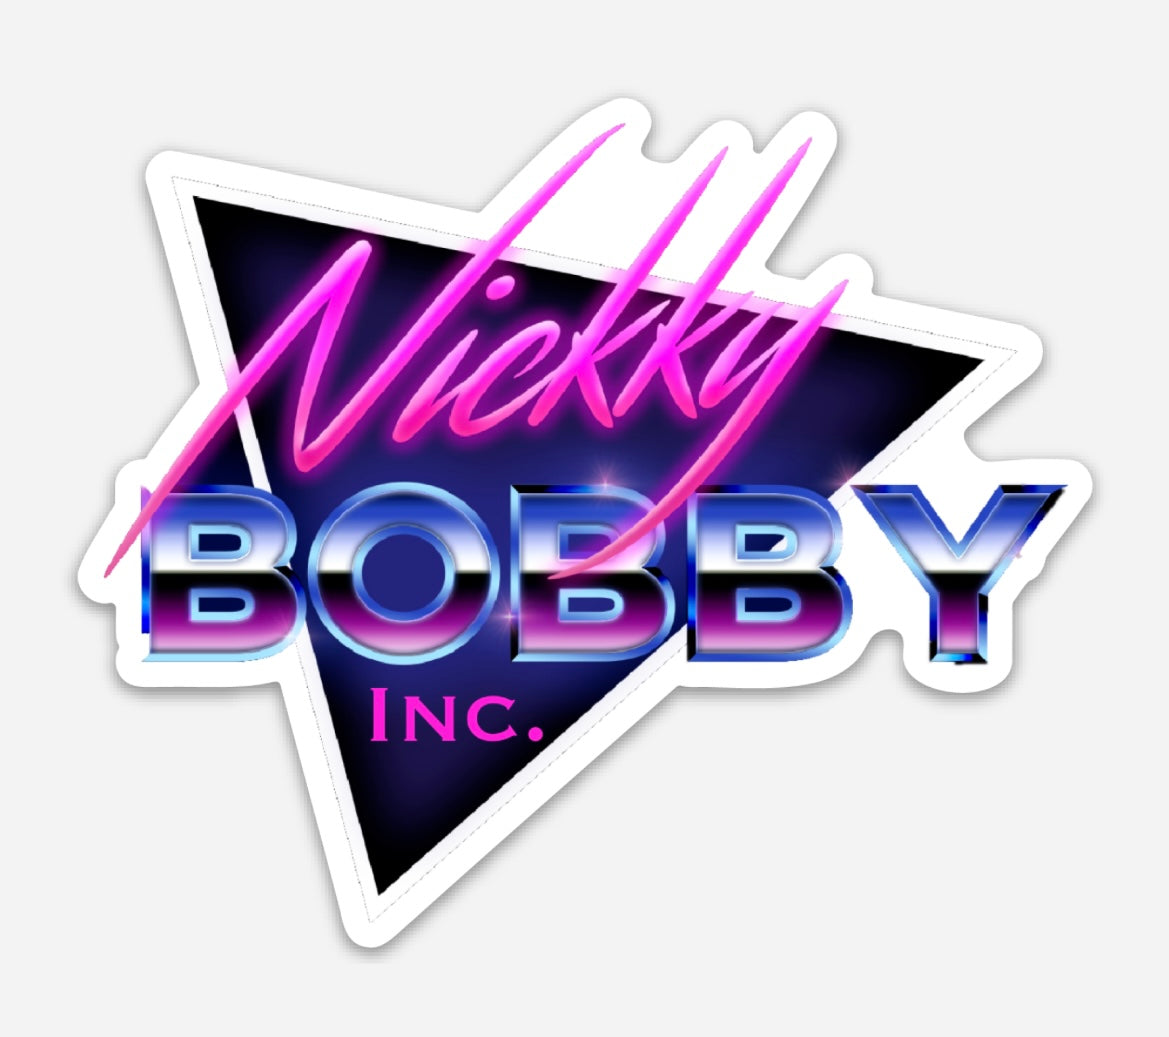 Nickky Bobby Inc. Stickers